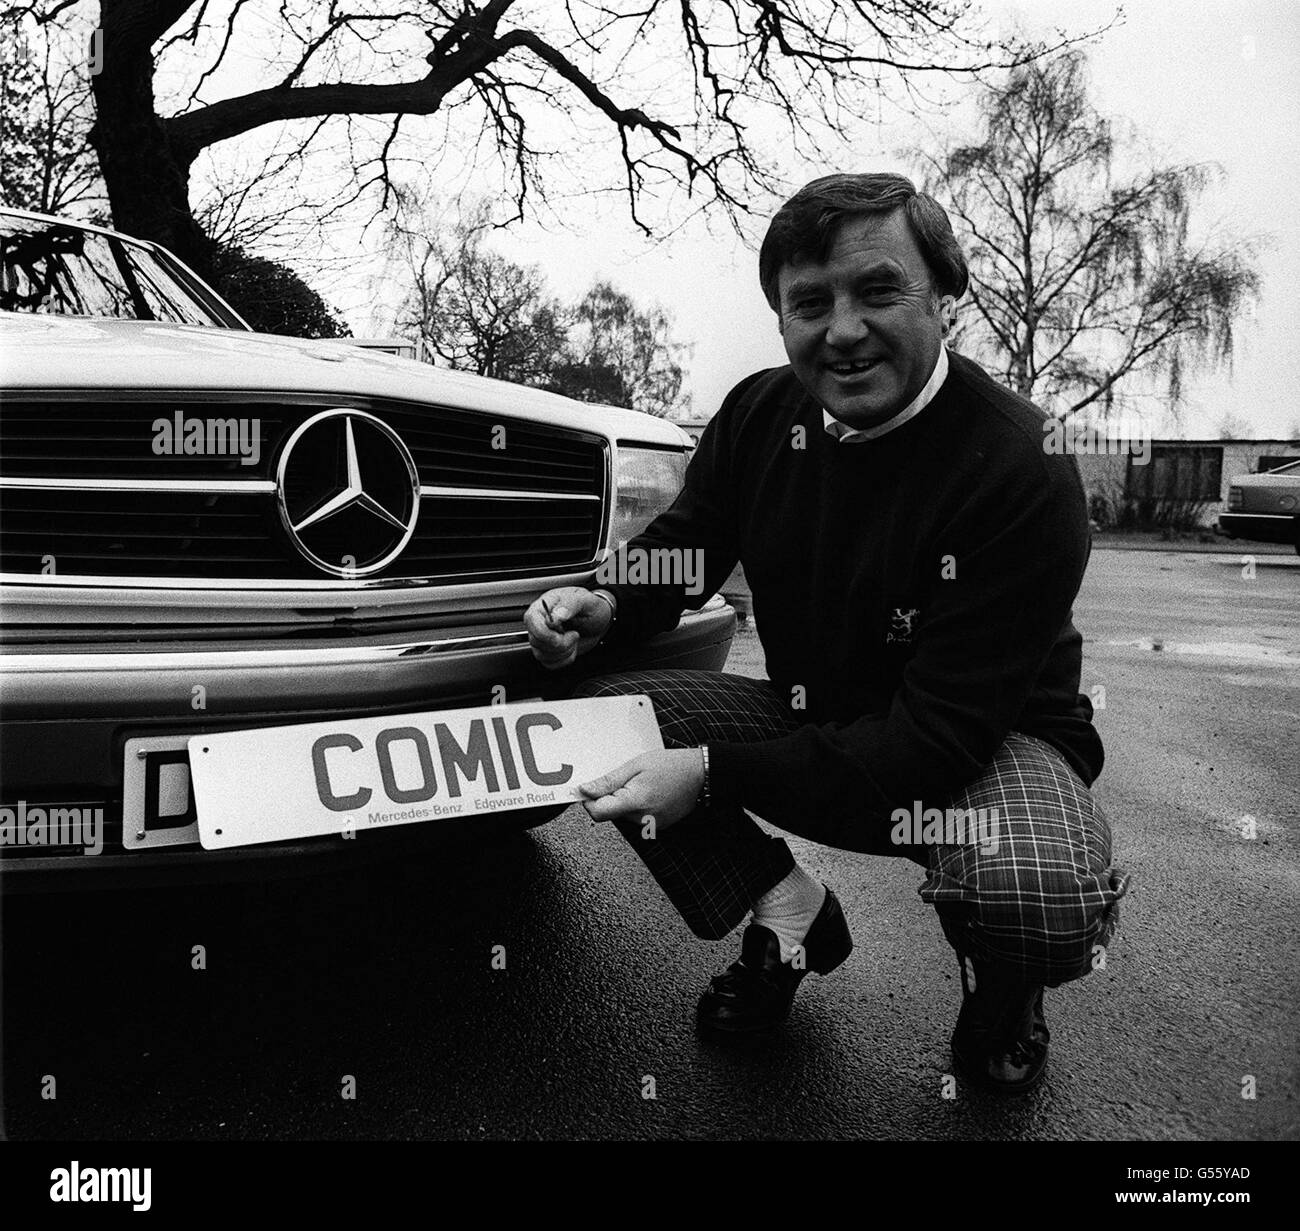 Komiker Jimmy Tarbuck. Der Komiker Jimmy Tarbuck mit seinem berühmten Nummernschild-Comic, den er auf seinen neuen Mercedes-Benz setzt. Stockfoto